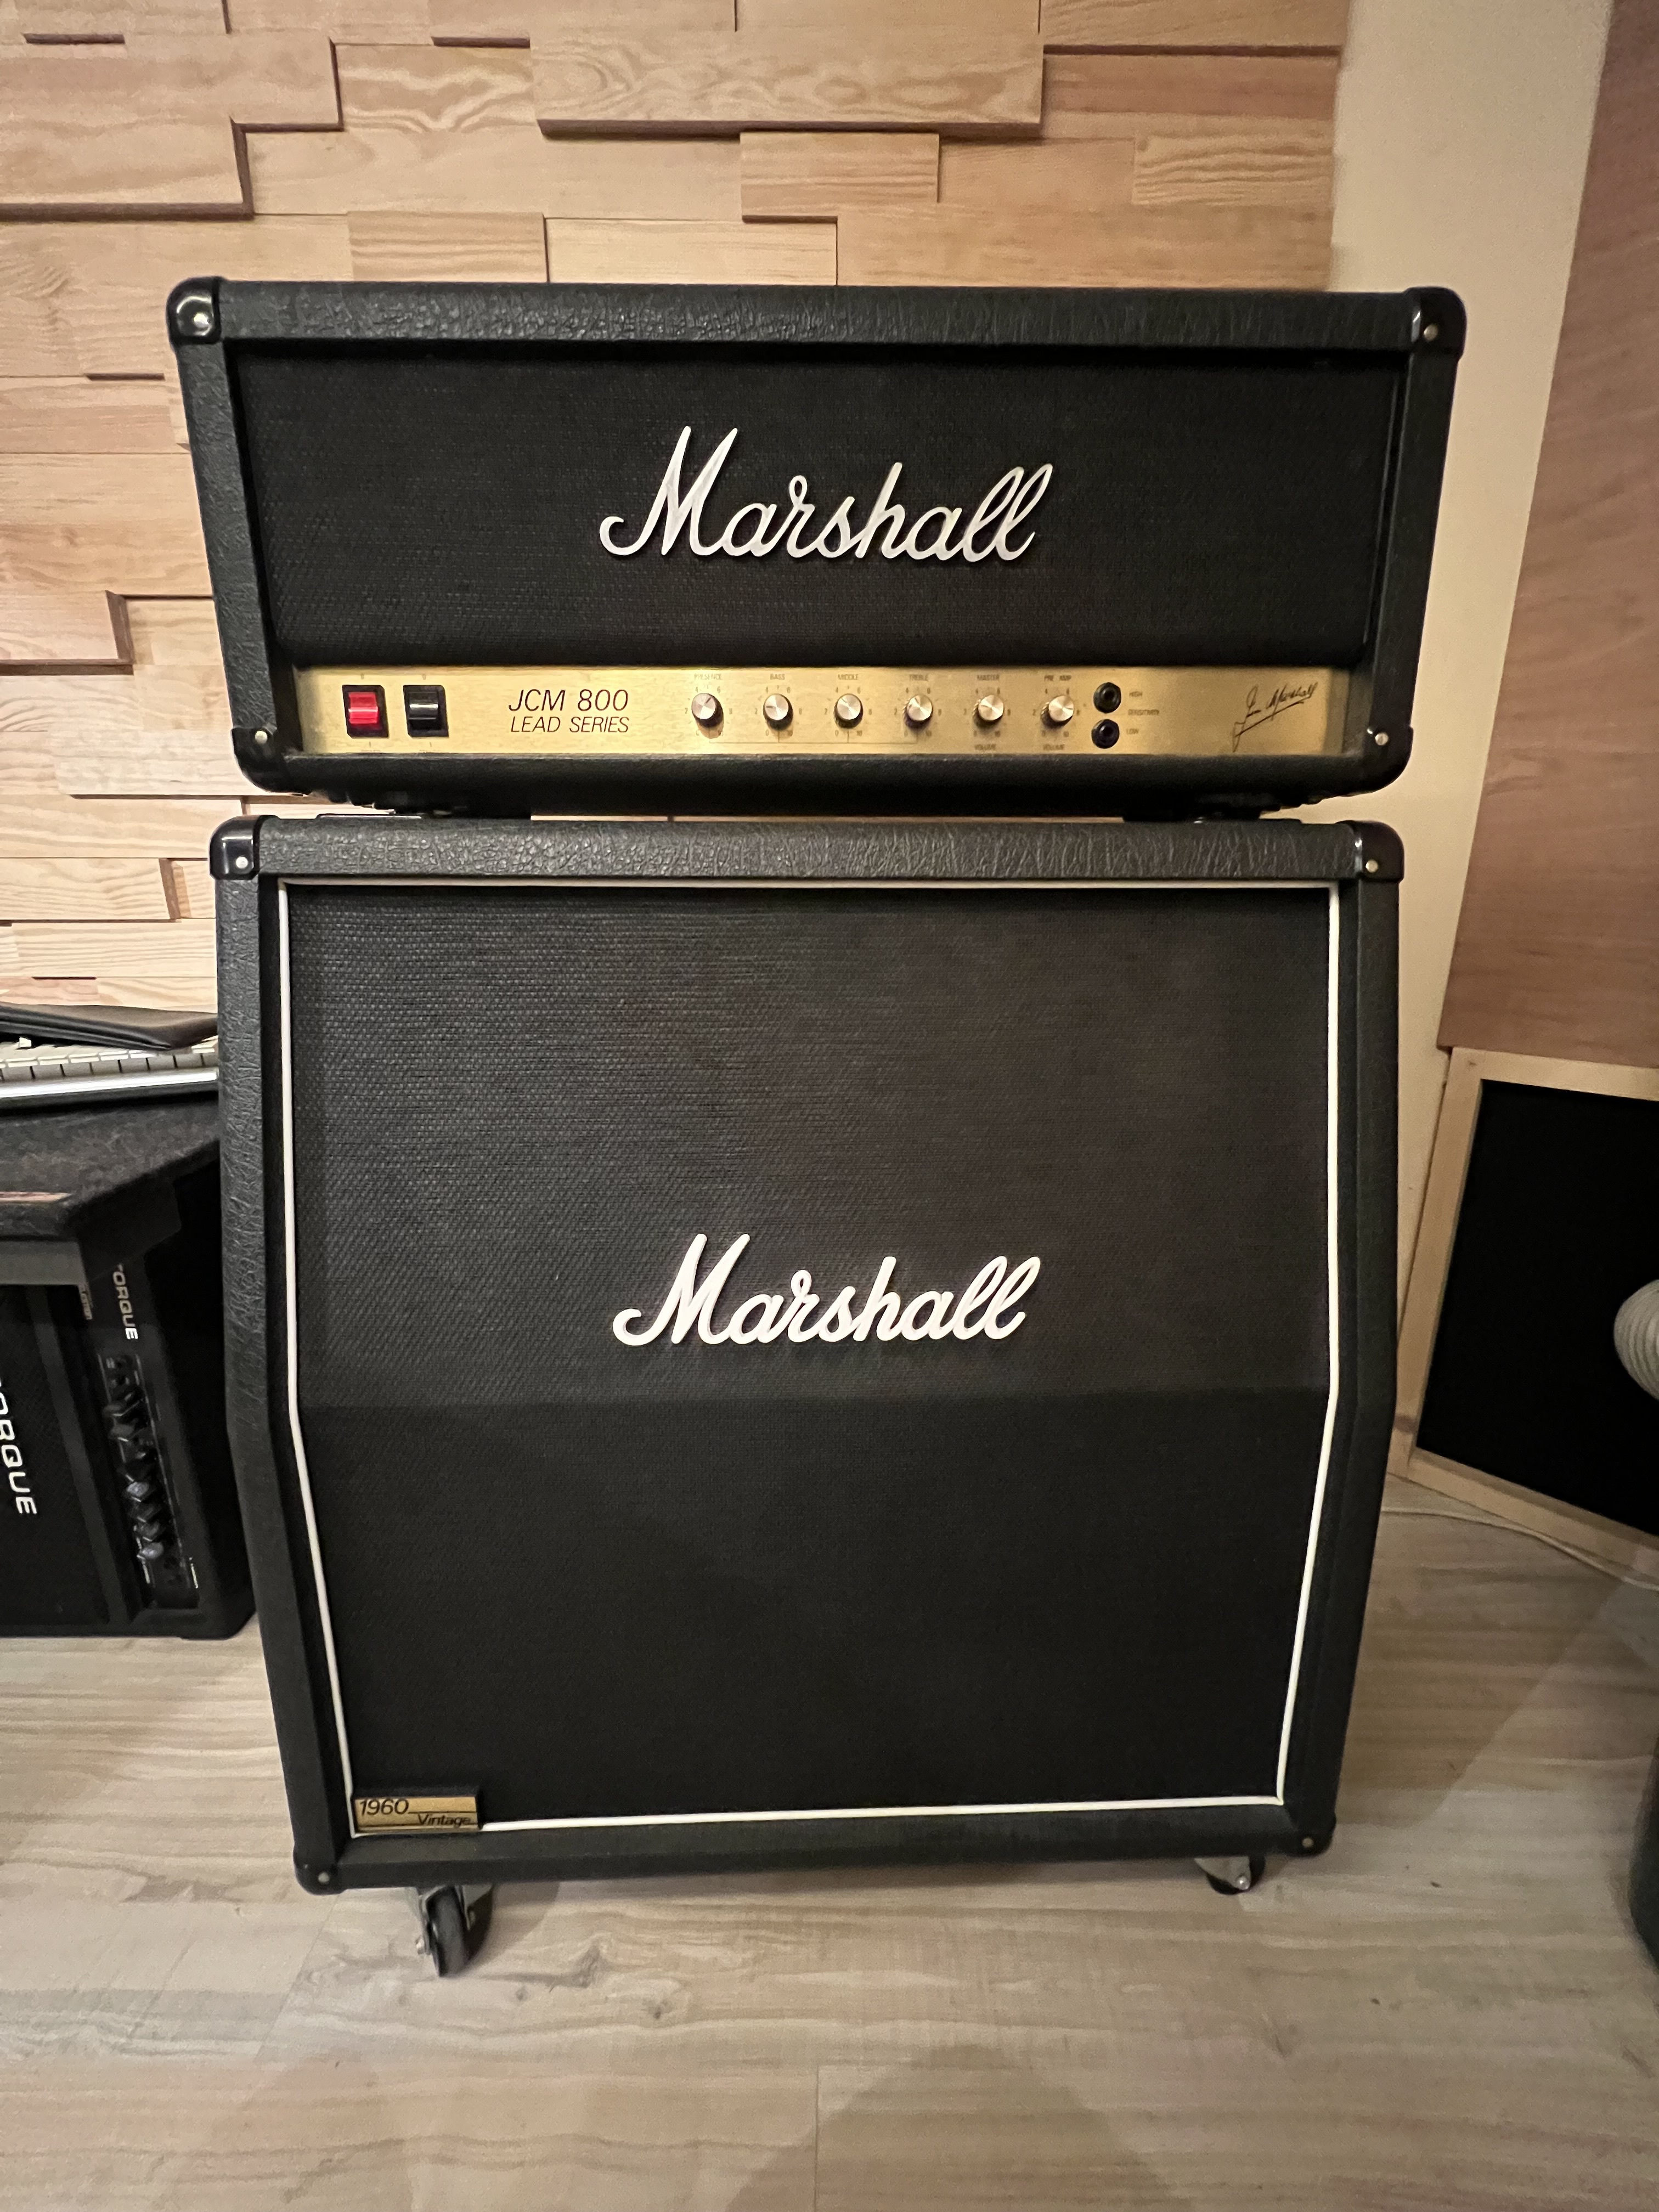 MARSHALL JCM800 en stock - 1 699,00€ (Amplis guitare électrique